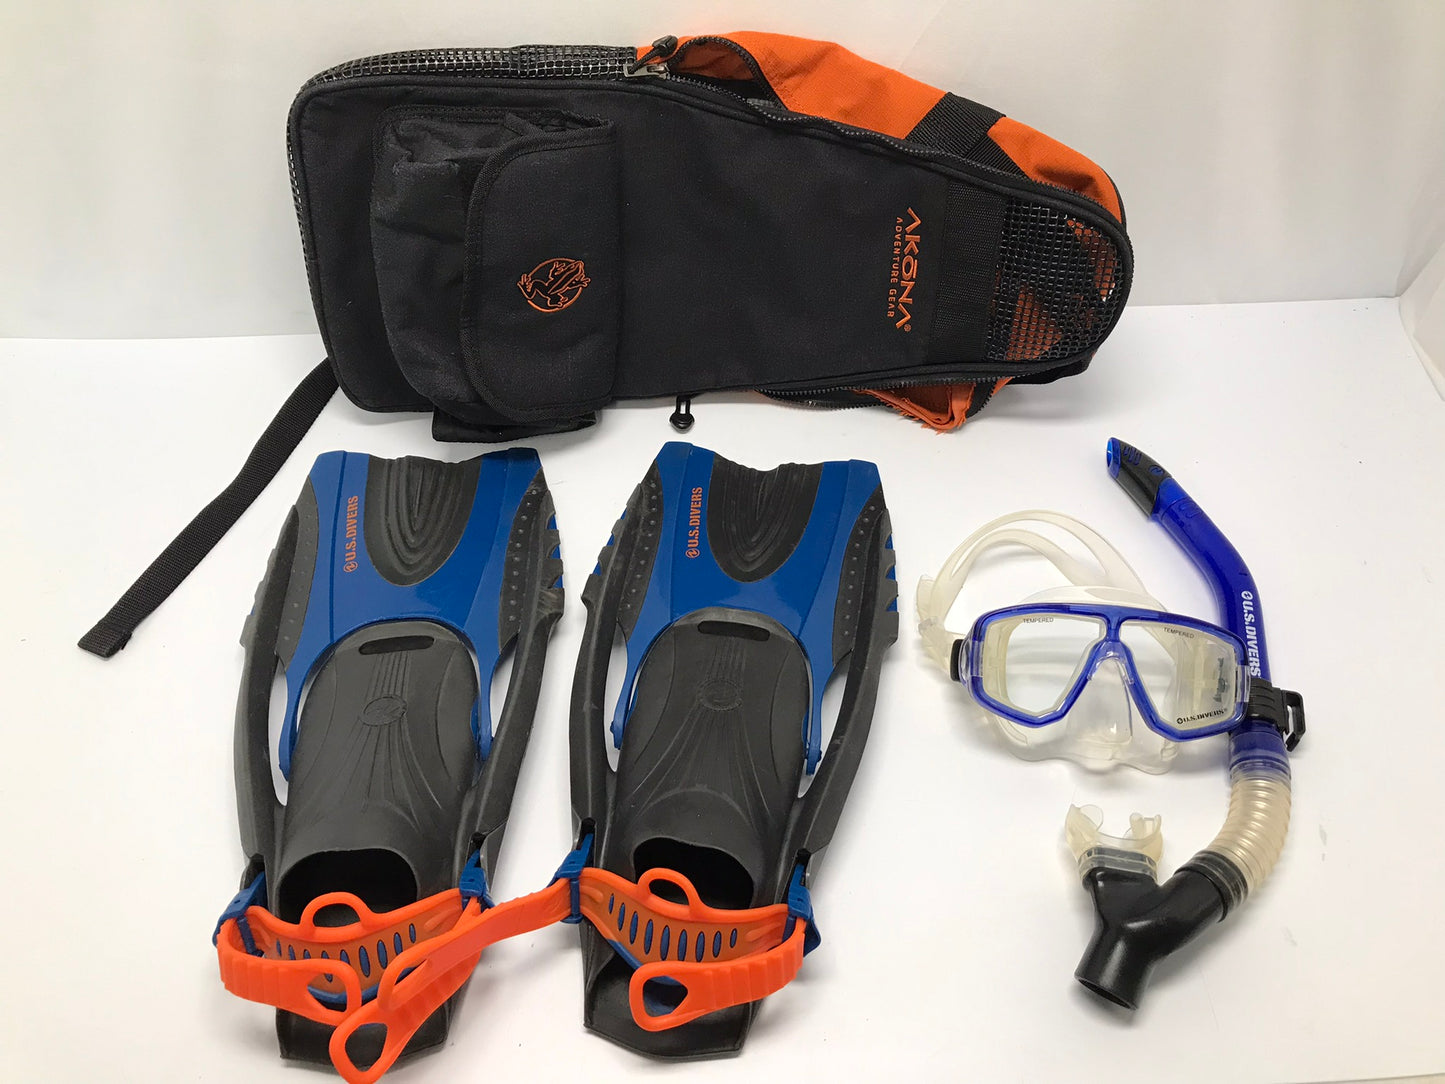 Snorkel Dive Fins Set Men's Ladies Size 4.5-8.5 Shoe US Divers Black Grey and Orange Excellent